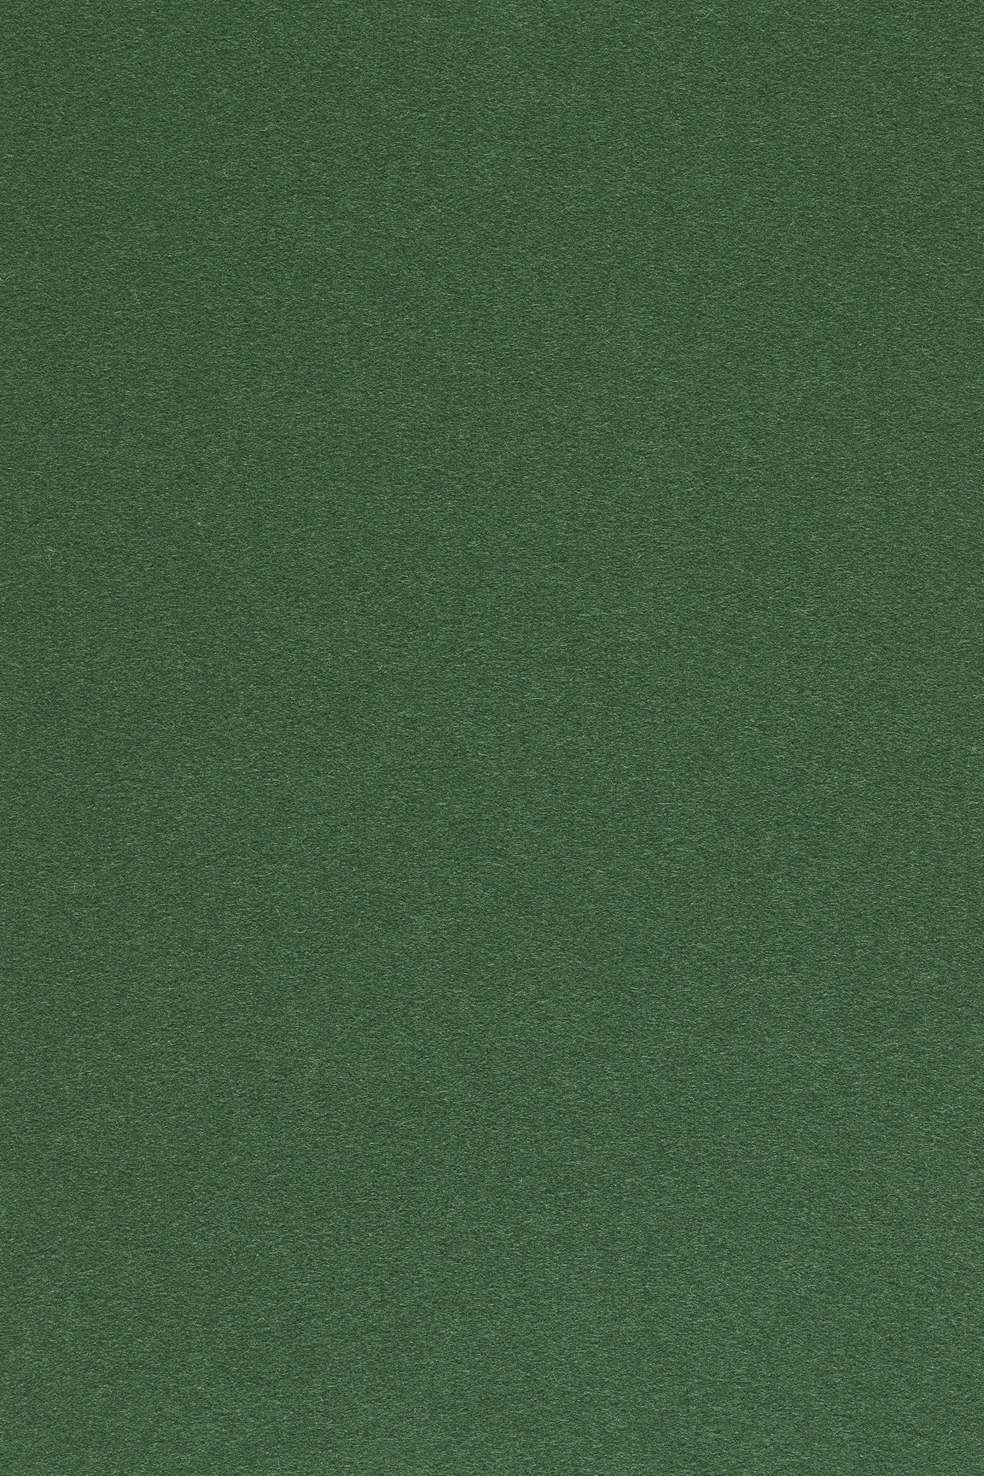 Fabric sample Divina 3 876 green